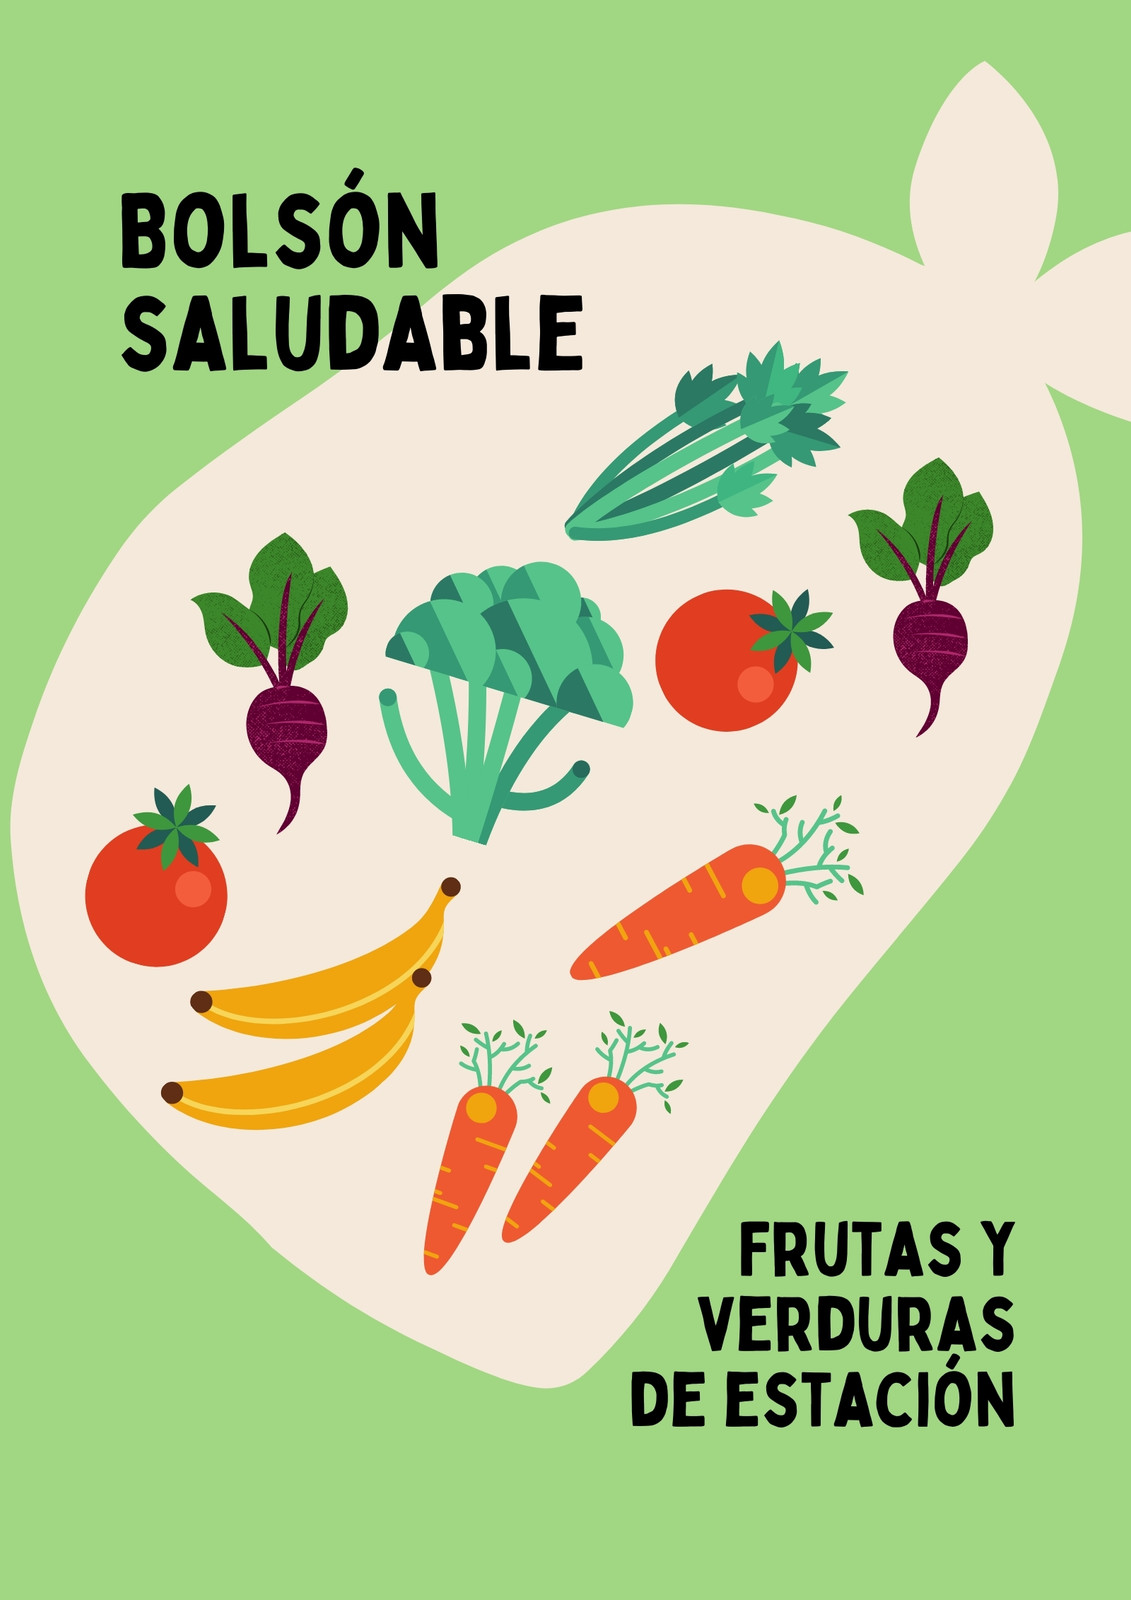 Flyer de diseño playful de verdulería online, color pastel green y blanco con frutas y verduras ilustradas